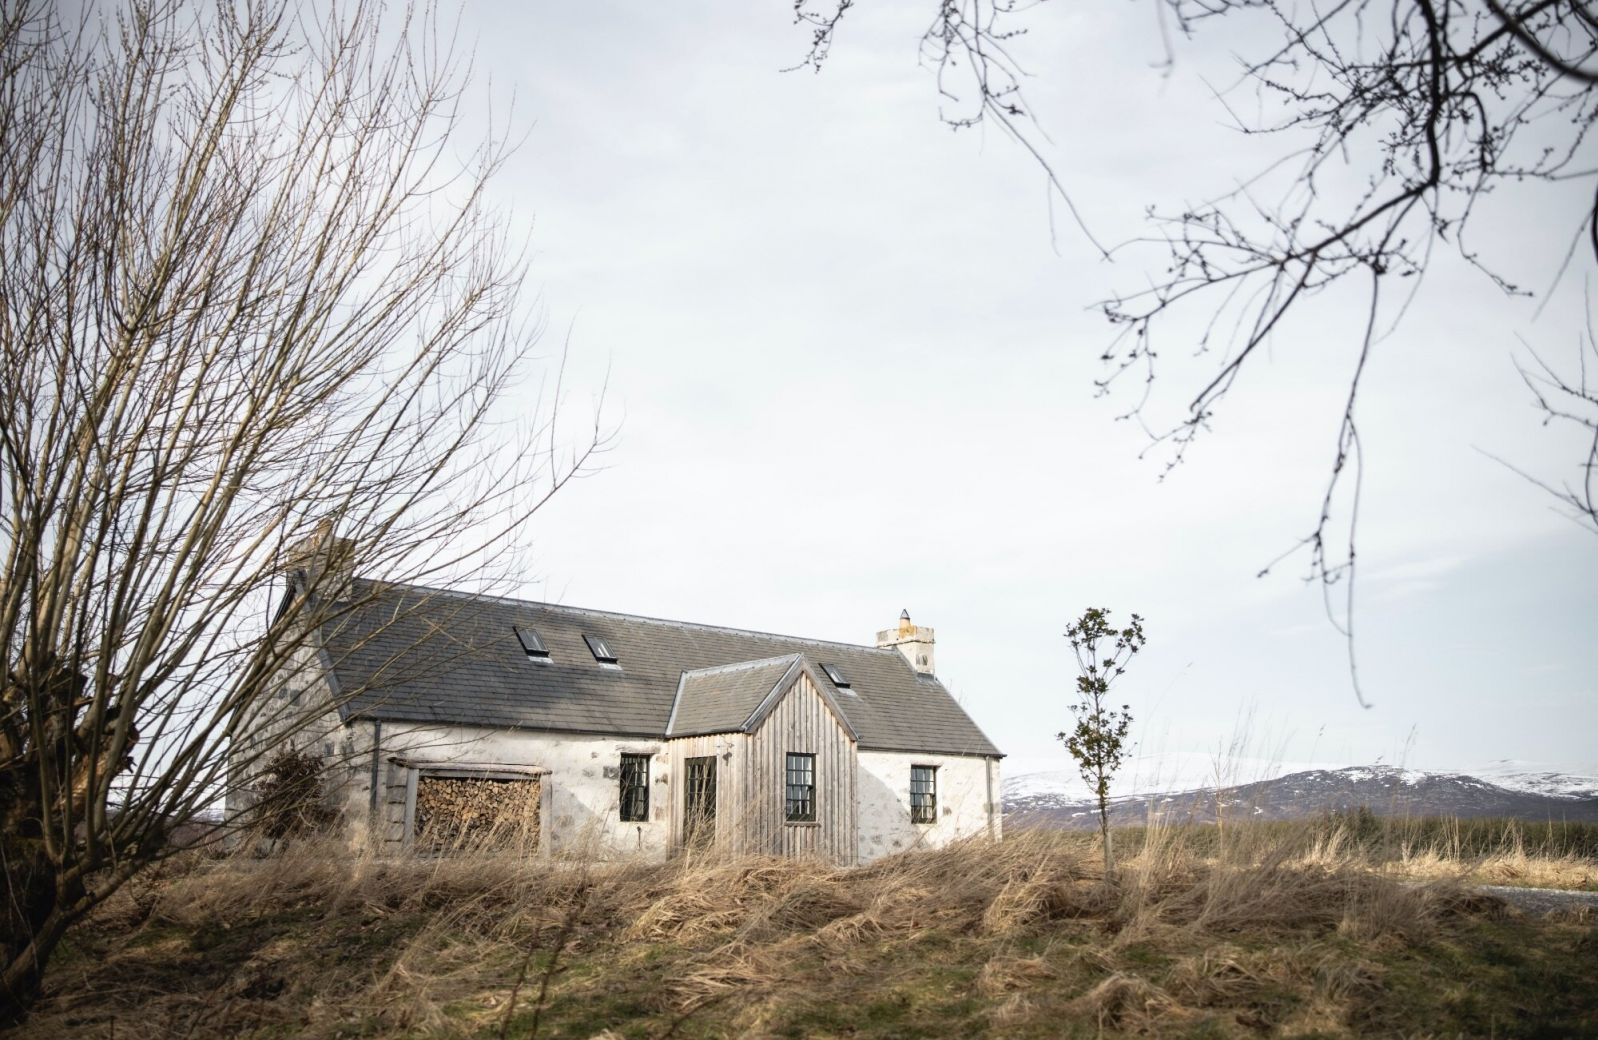 Scottish Highlands Cottages, Cottages and More